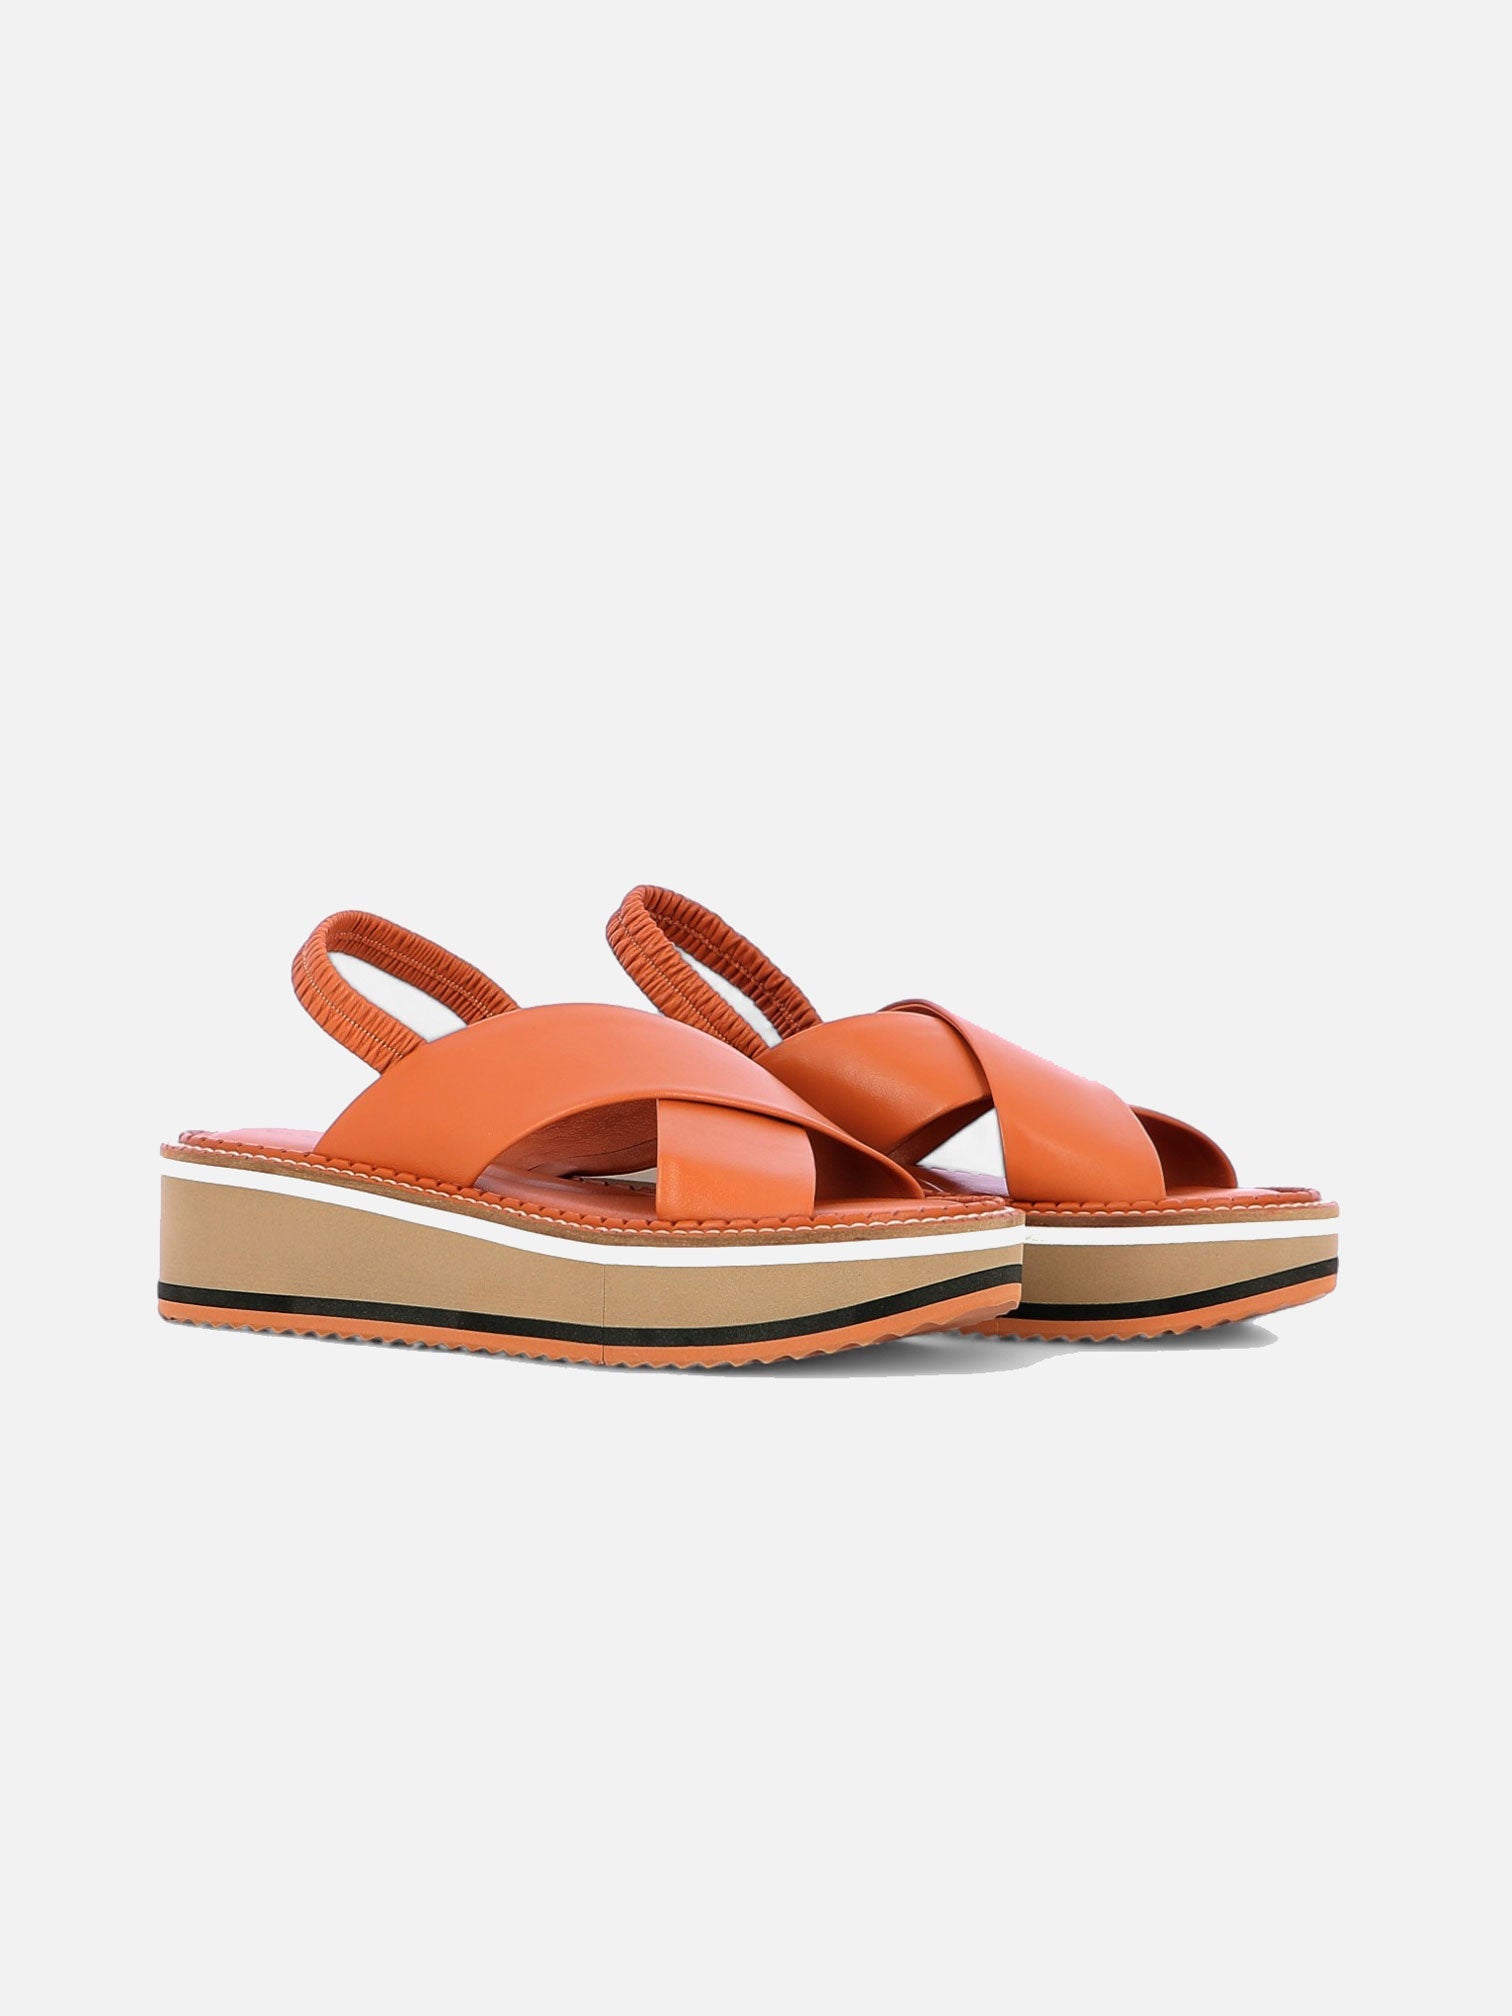 SANDALS - FREEDOM sandals, lambskin brown - 3606064008920 - Clergerie Paris - Europe